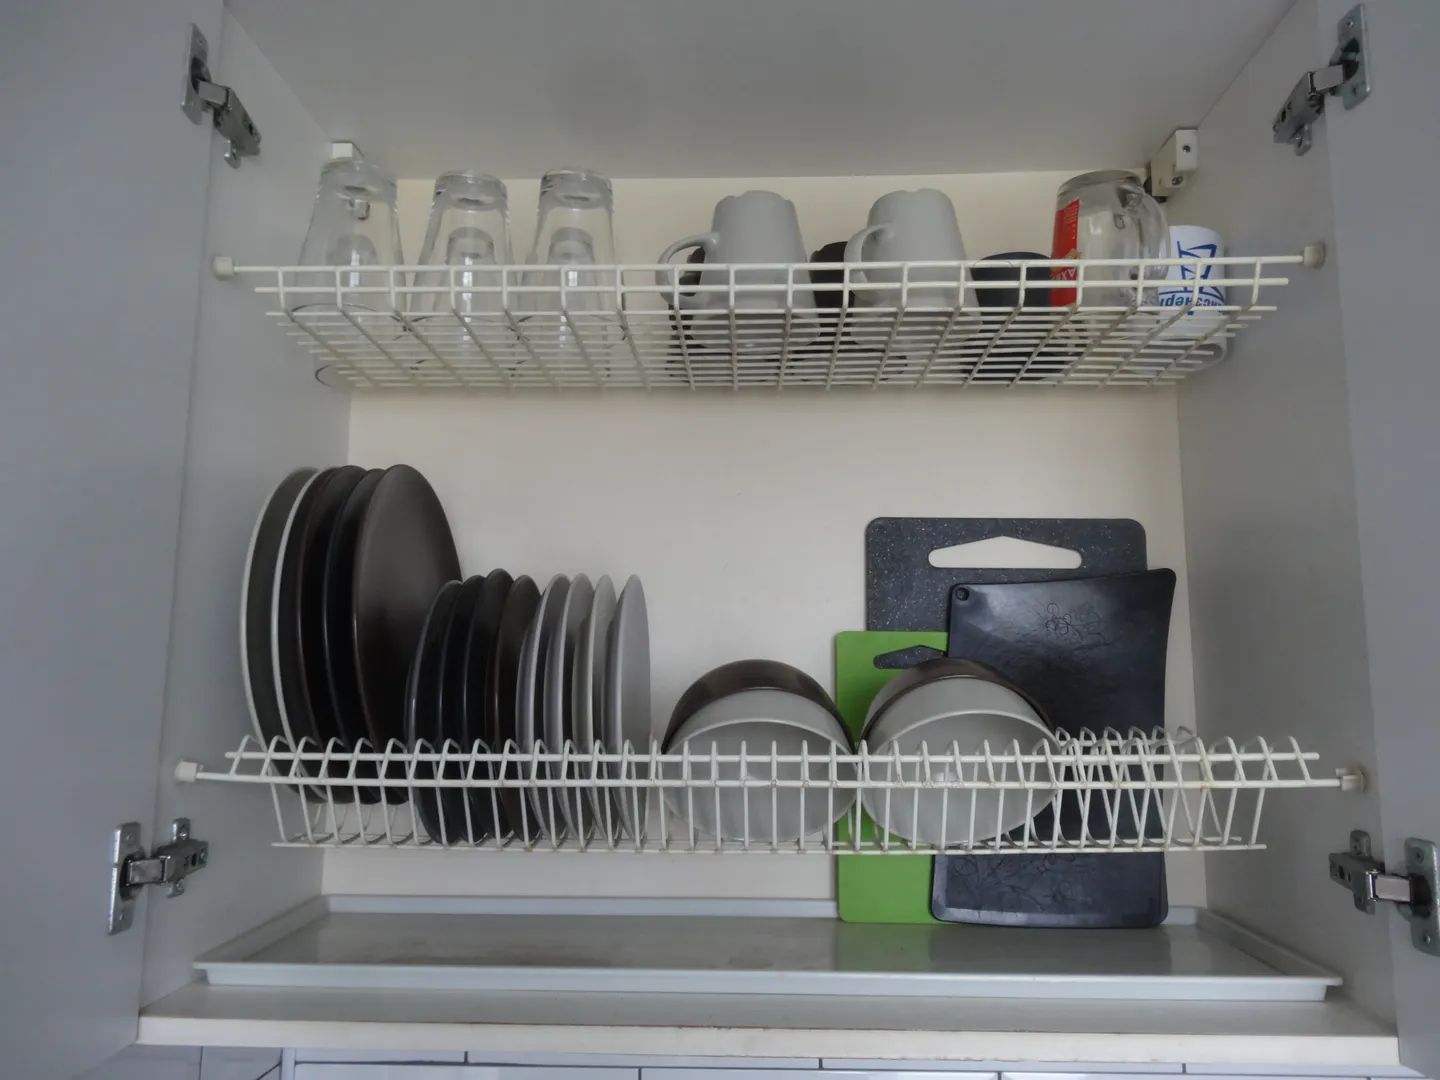 Тарелки, чашки, стаканы, разделочные доски хранятся в сушильном шкафу кухонного гарнитура над раковиной.